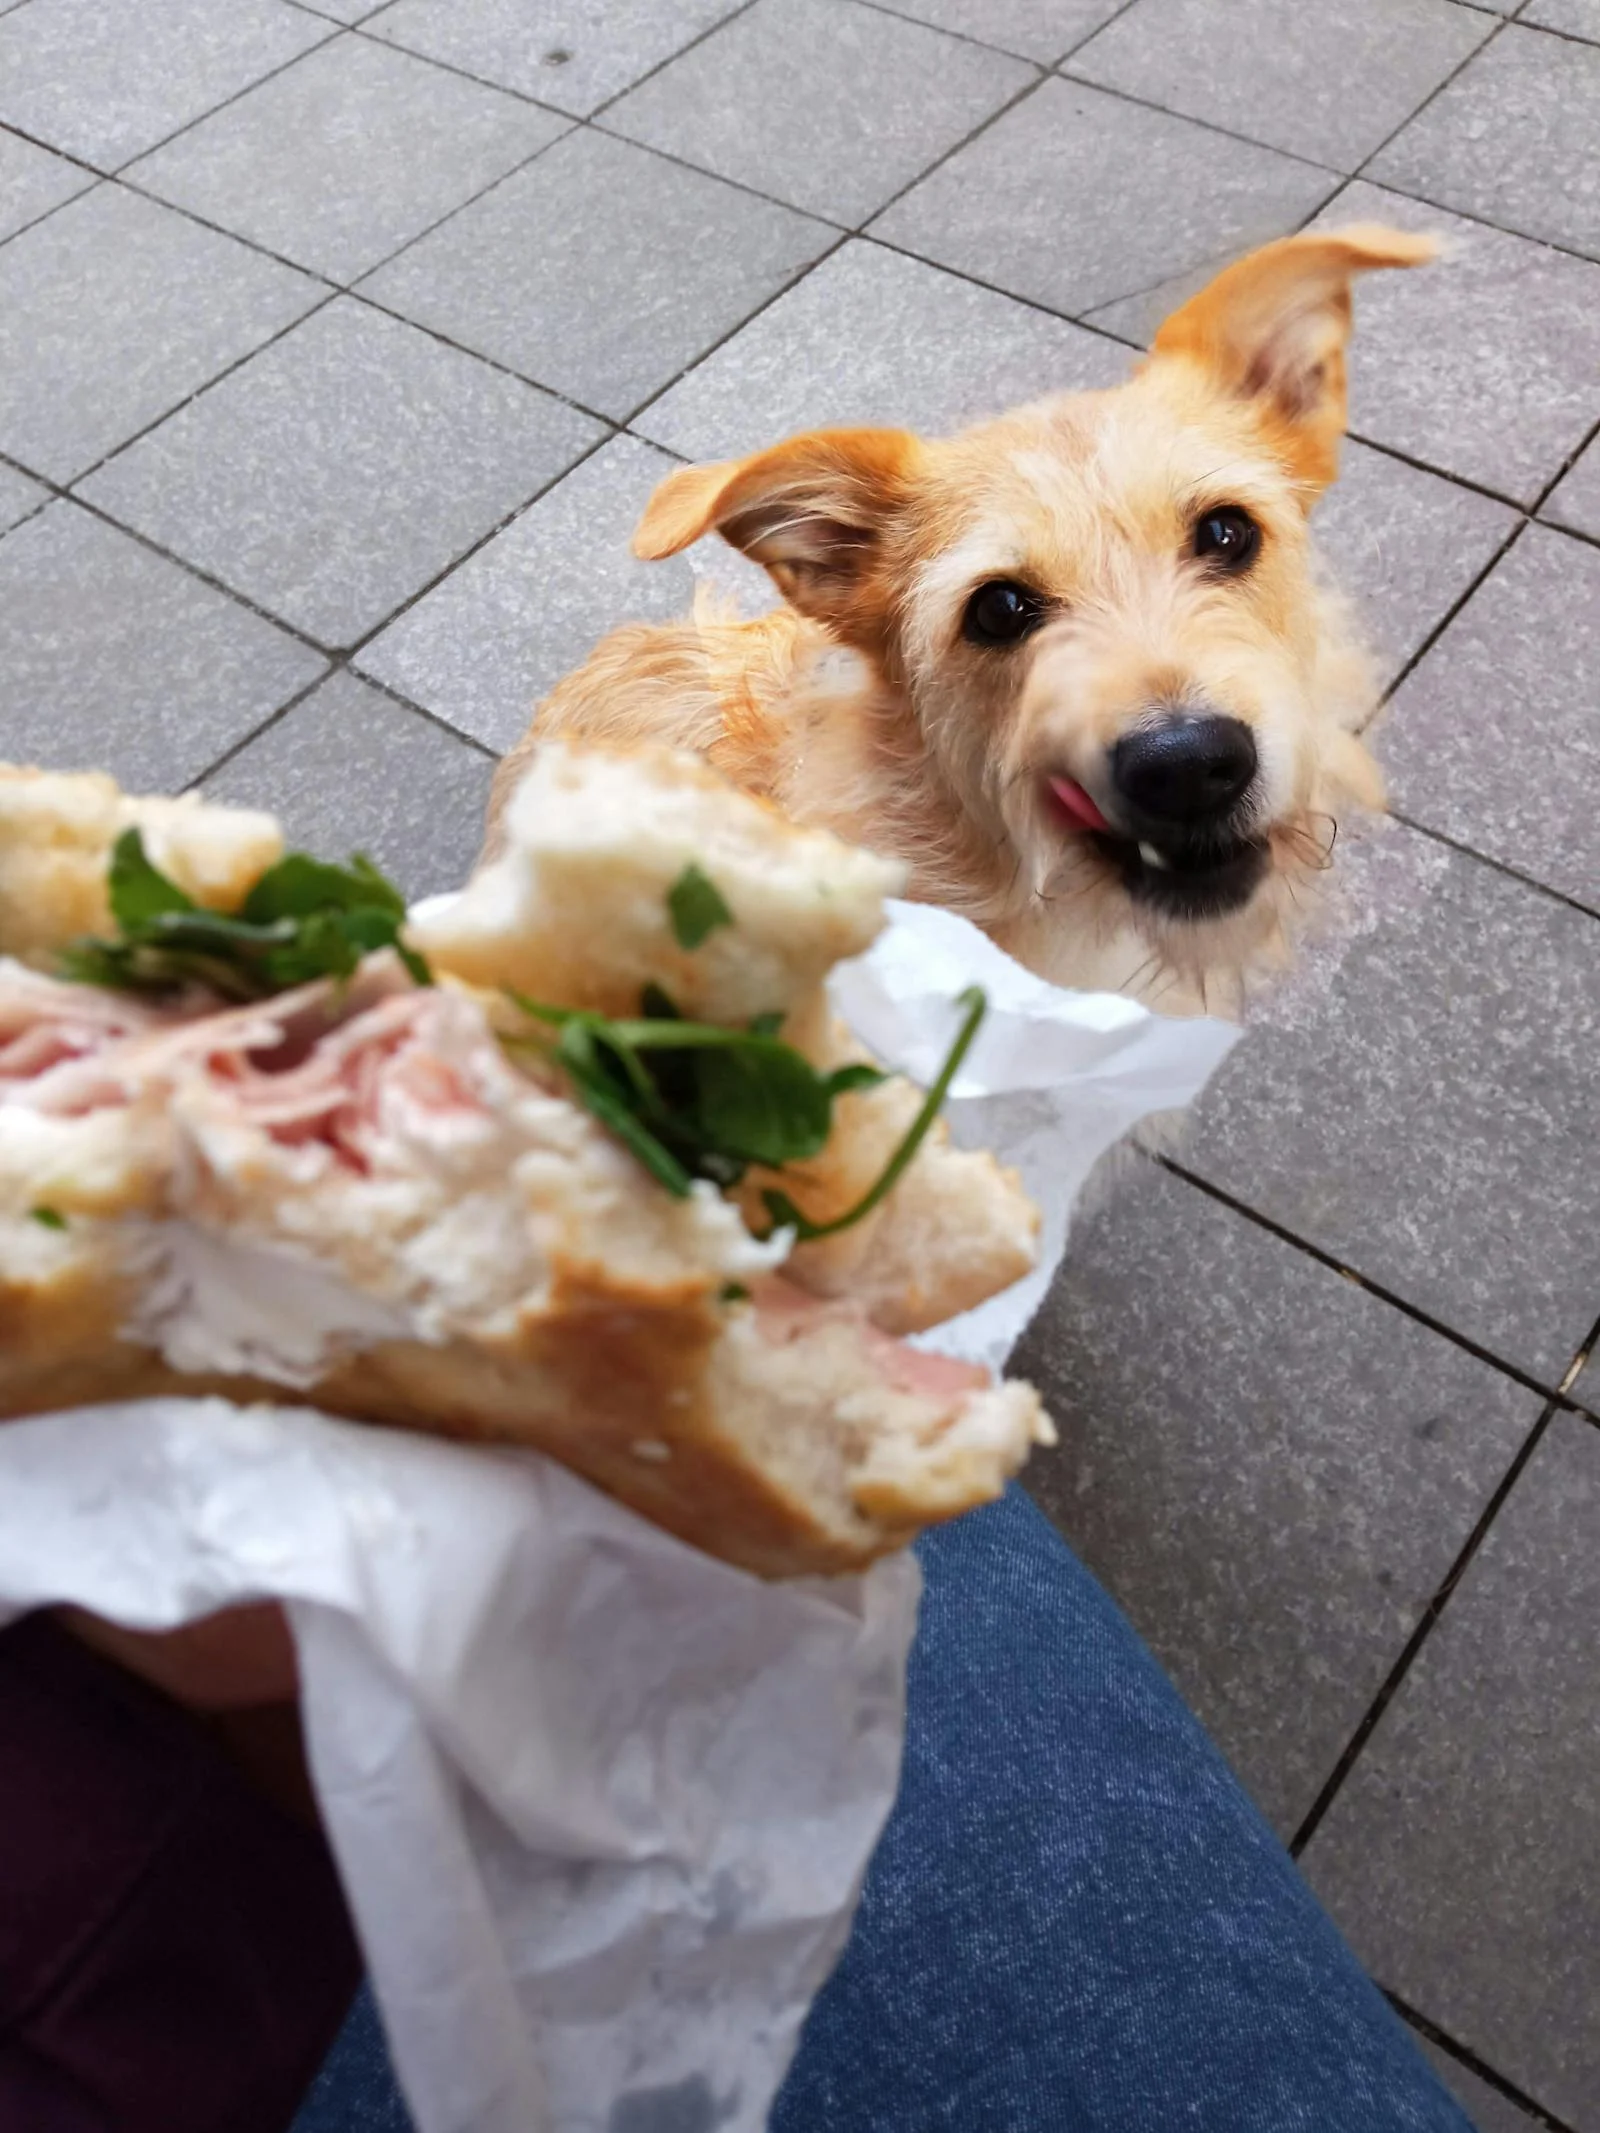 Pantangan Makanan Anjing Beagle